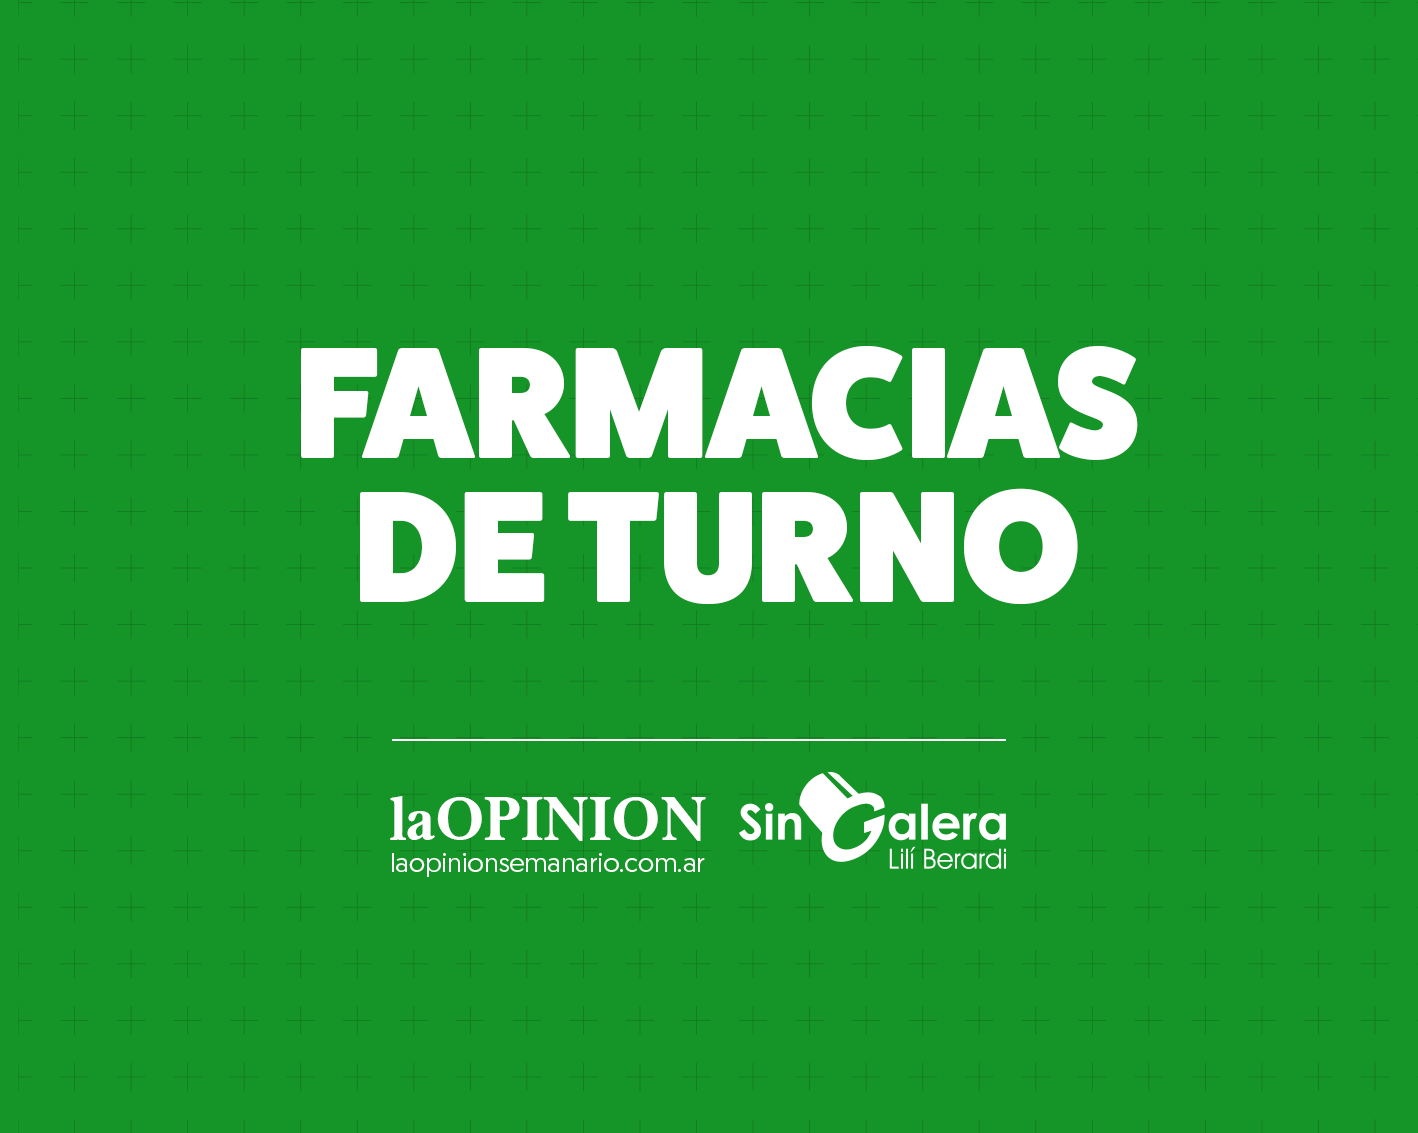 Farmacias de turno 18/12: Antelo, Liliana Martínez y Millet